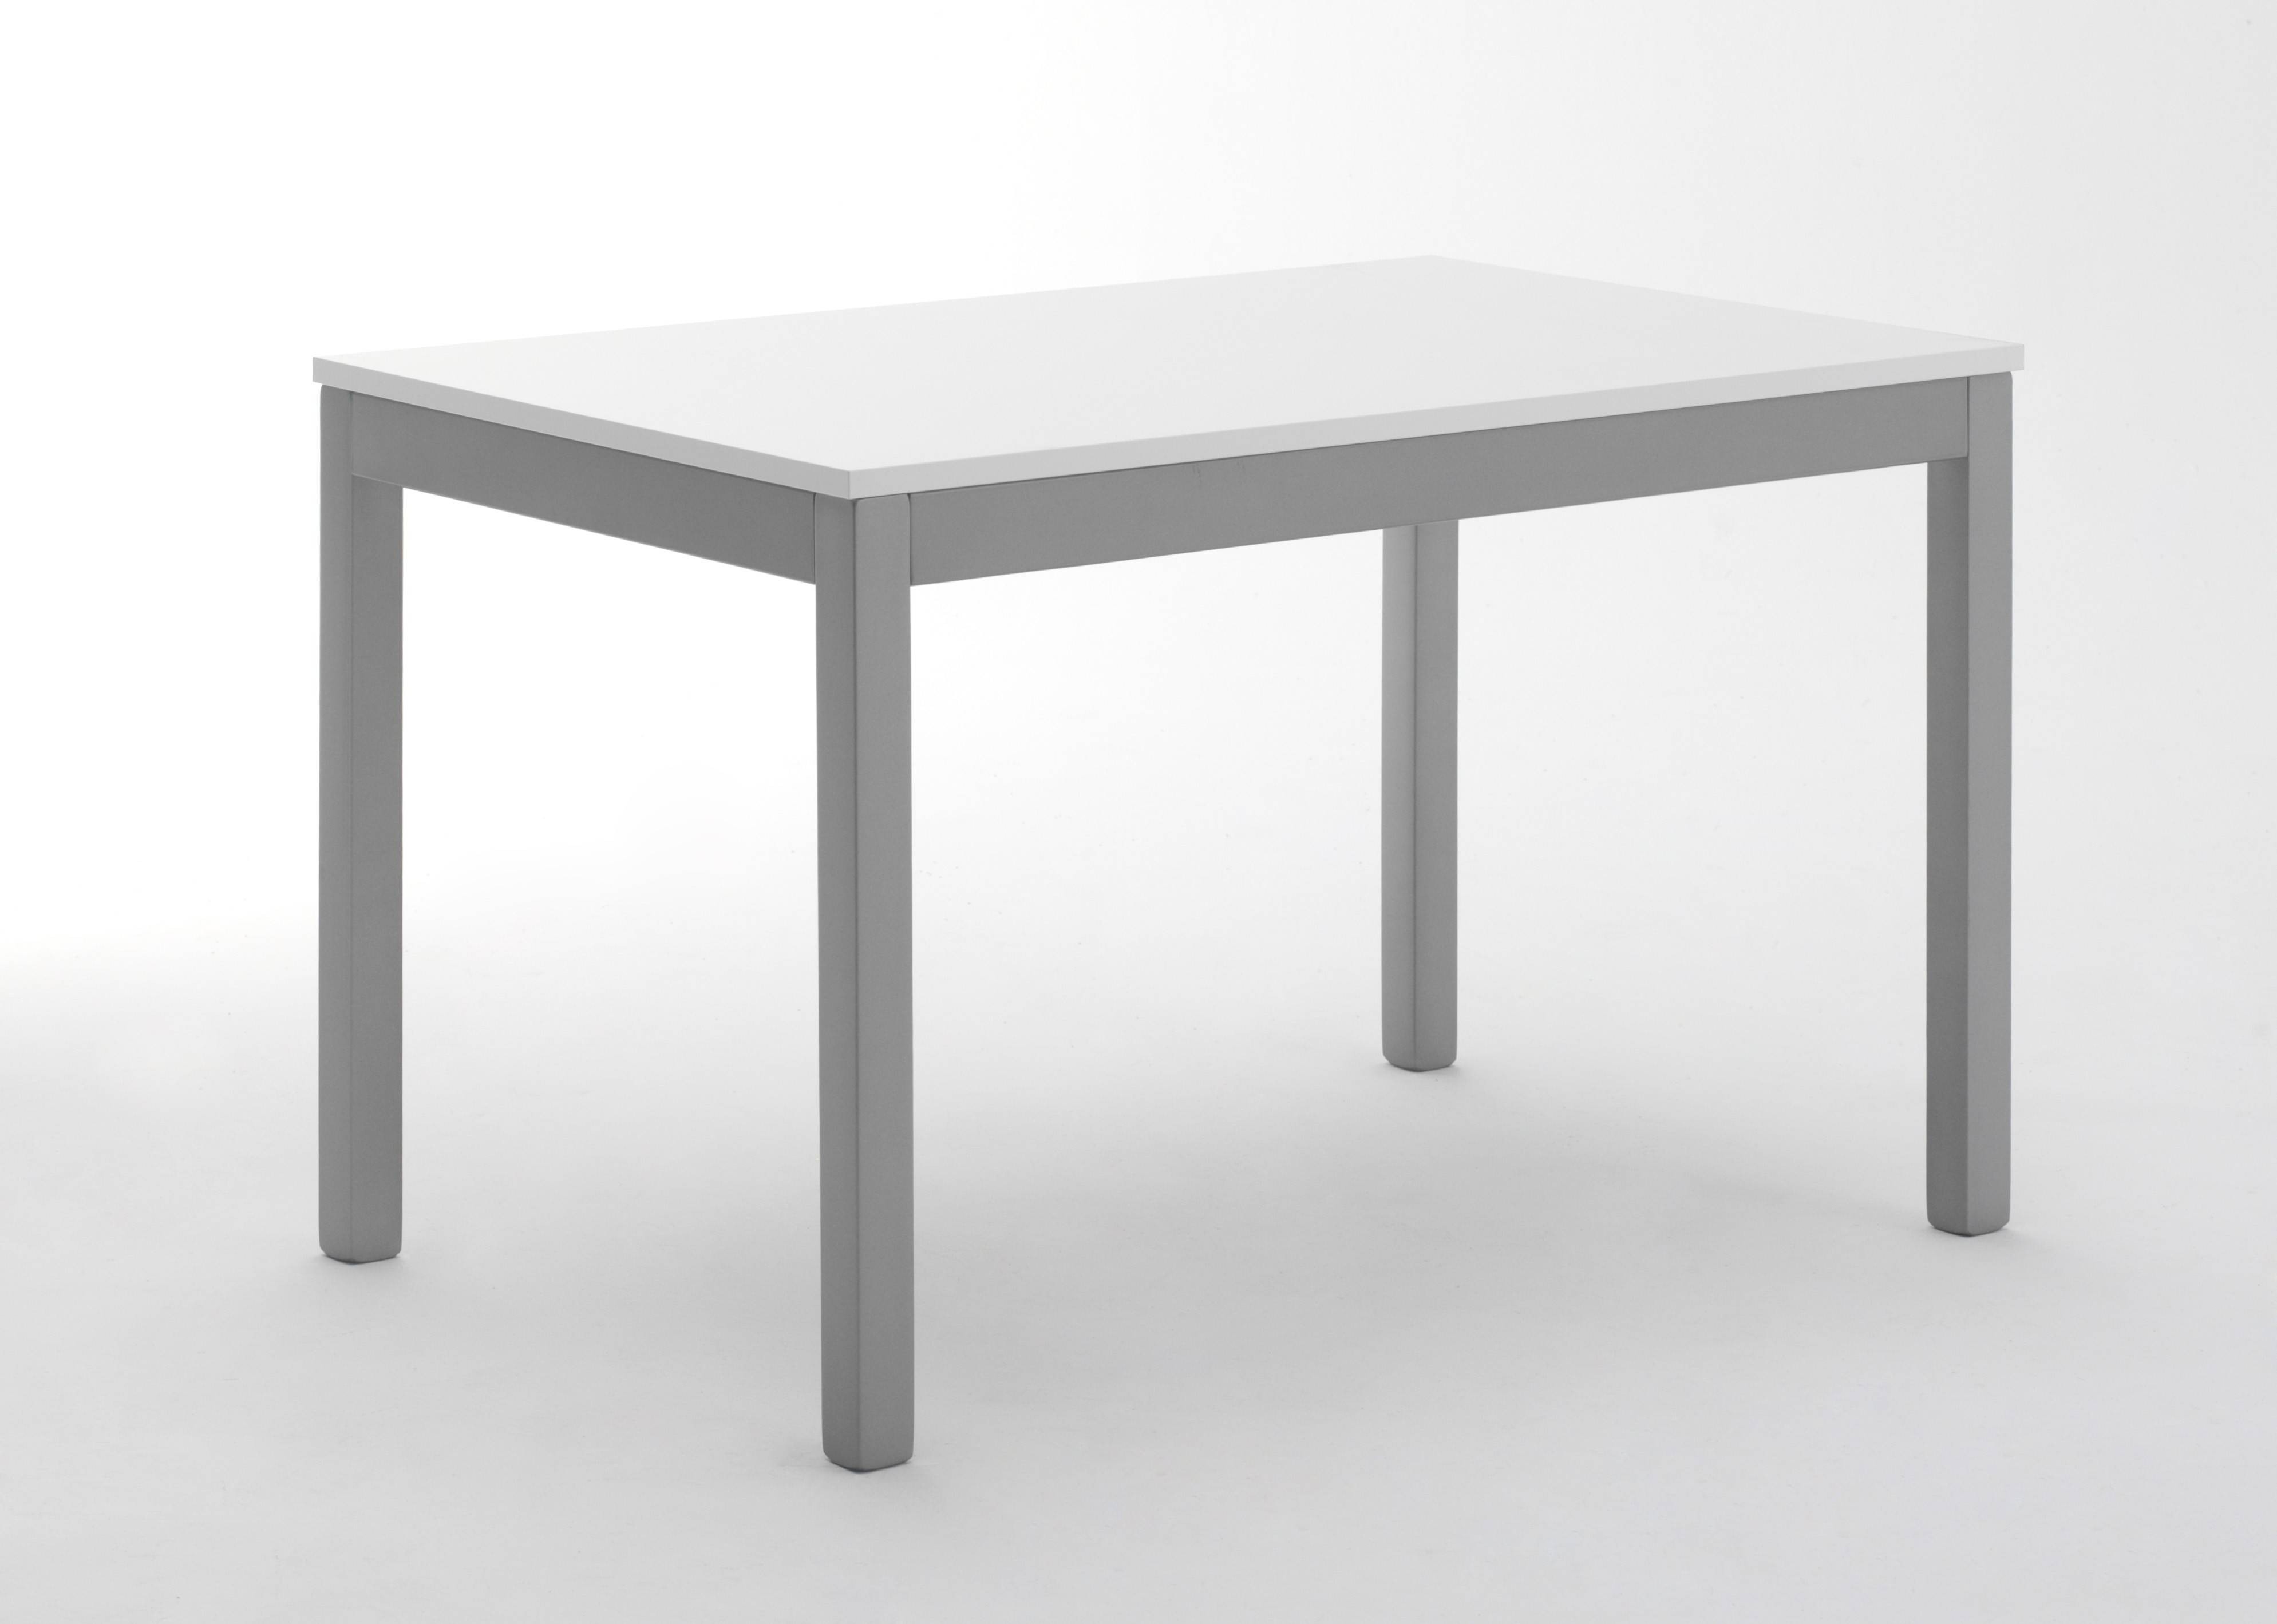 tavolo-urano-allungabile-piano-in-nobilitato-bianco-e-gambe-laccato-alluminio-made-in-italy.jpg